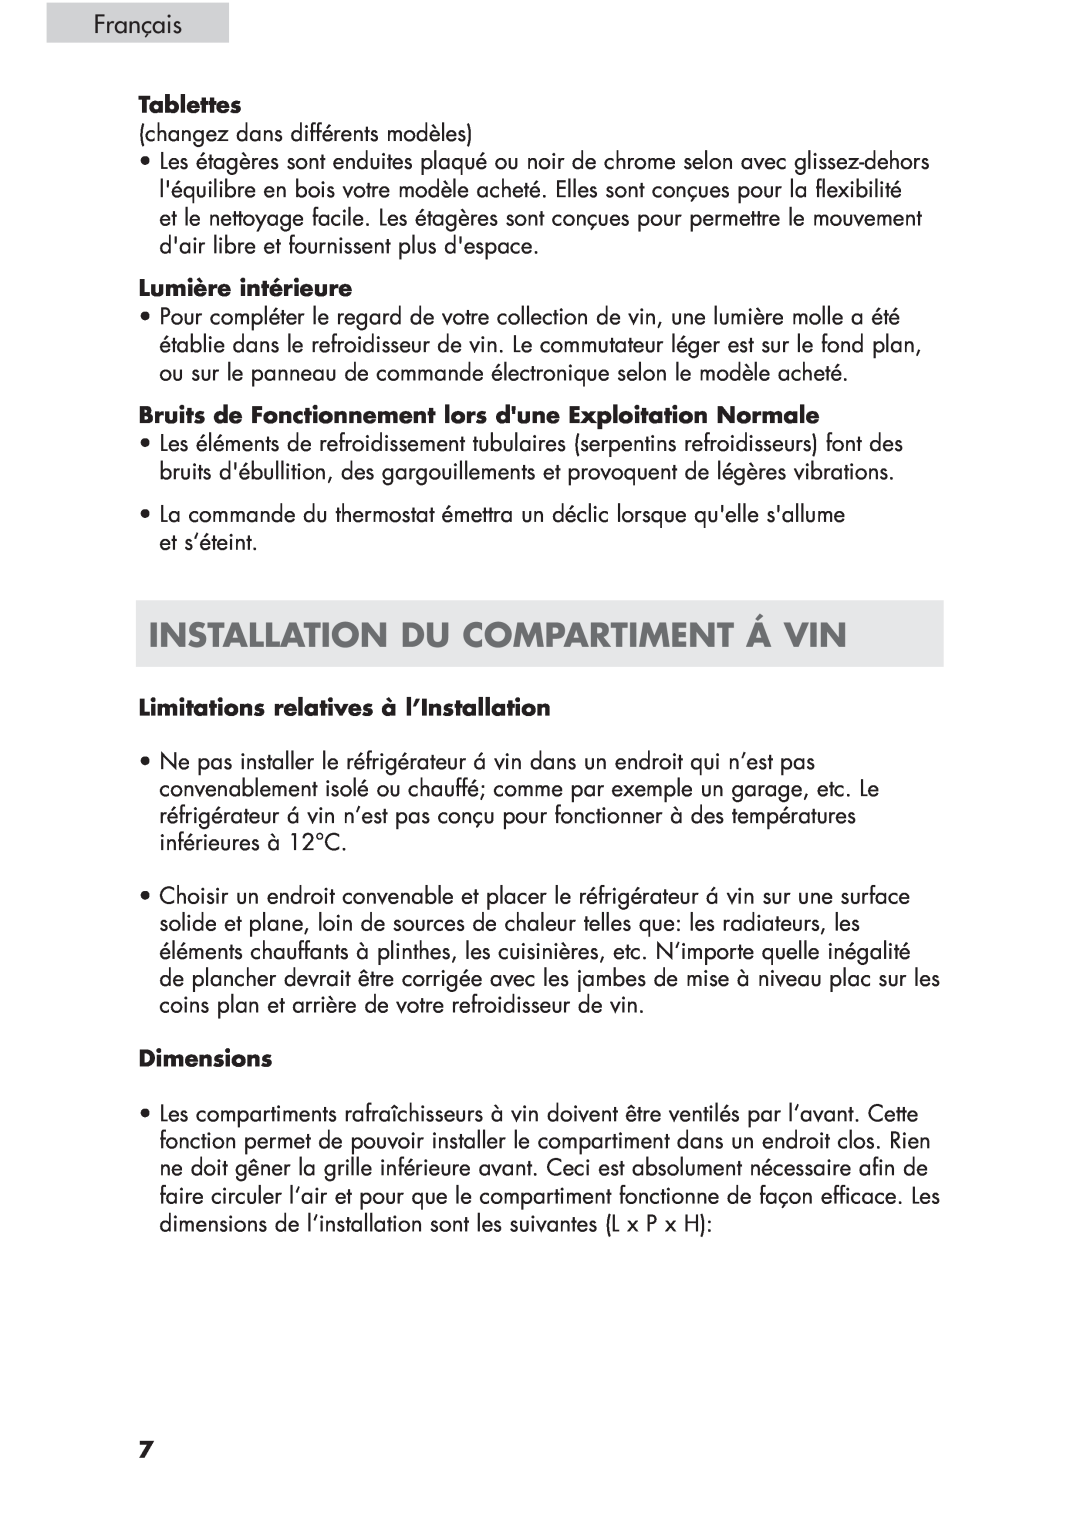 Haier HVCE24, HVCE15 user manual Installation Du Compartiment Á Vin, Français, Tablettes, Lumière intérieure, Dimensions 